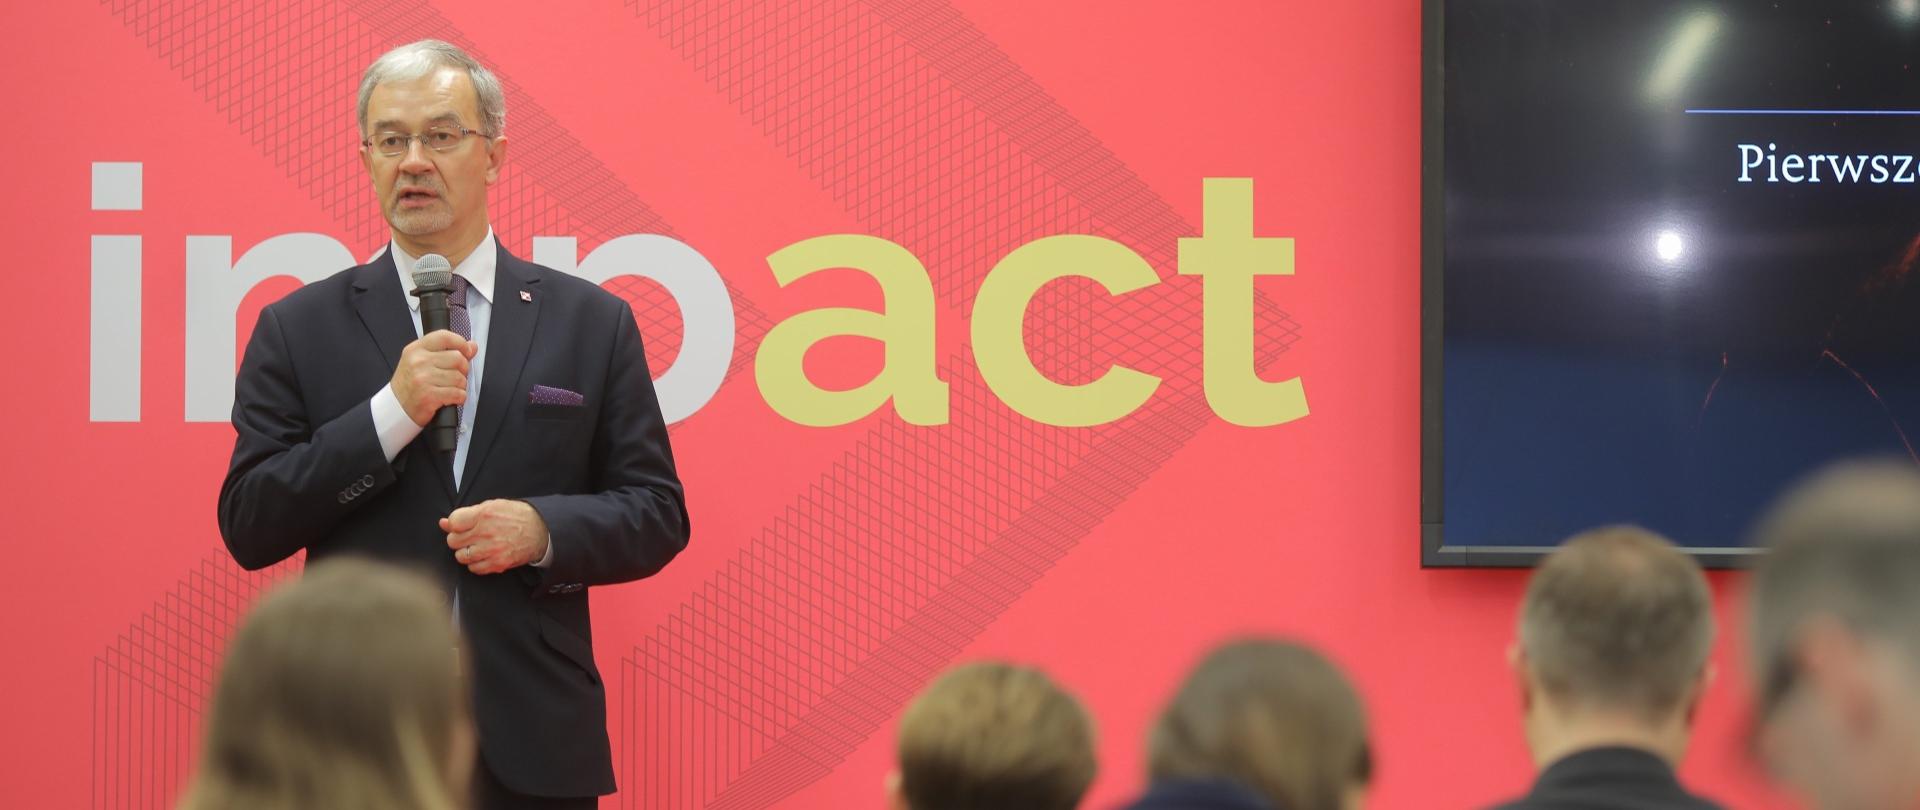 Minister Jerzy Kwieciński stoi z mikrofonem w ręku na tle ekranu z napisem "impact". Przed nim siędza osoby, uczestnicy konferencji.